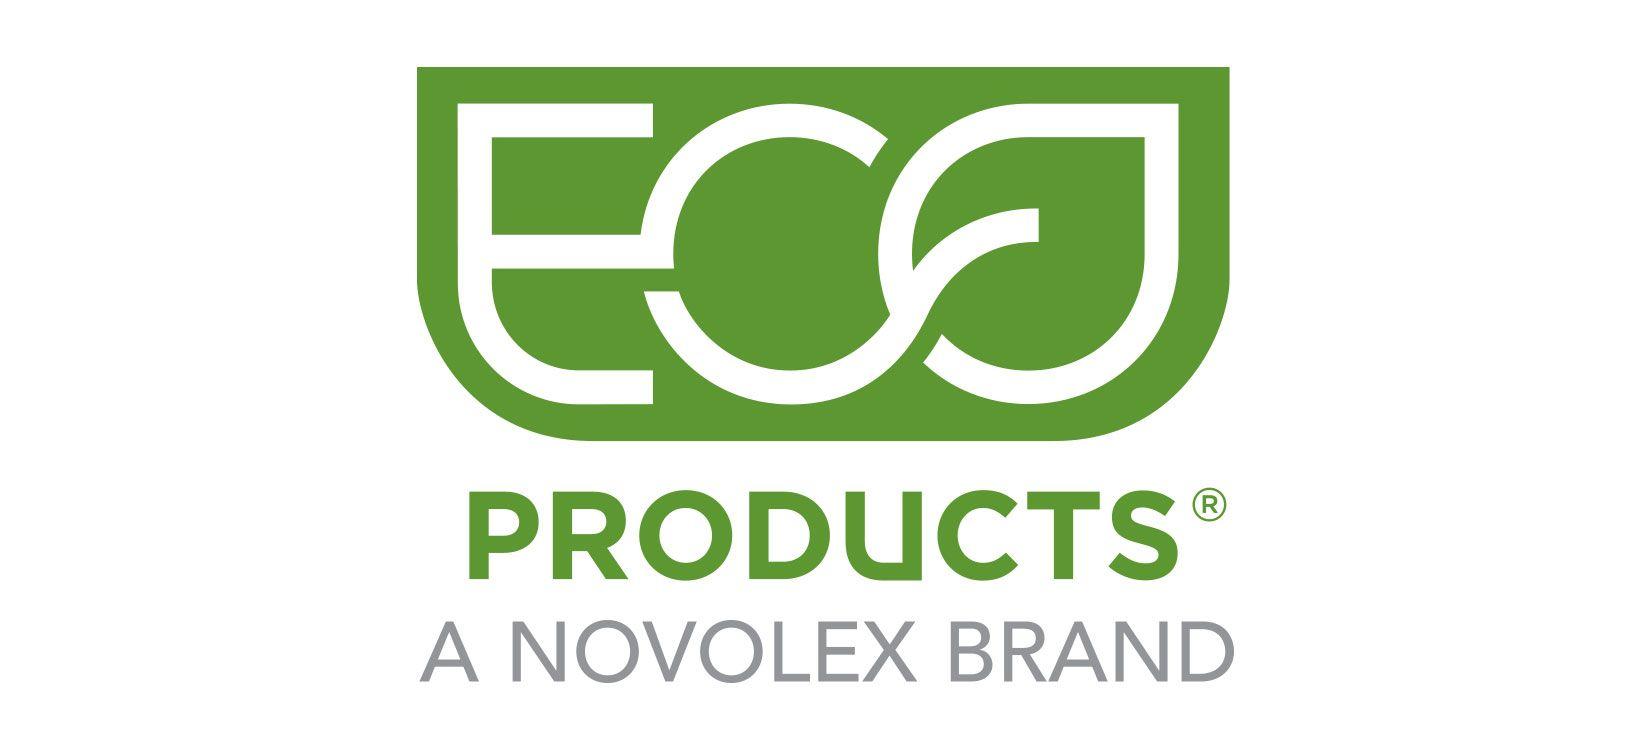 300 Logo - Logos - Novolex